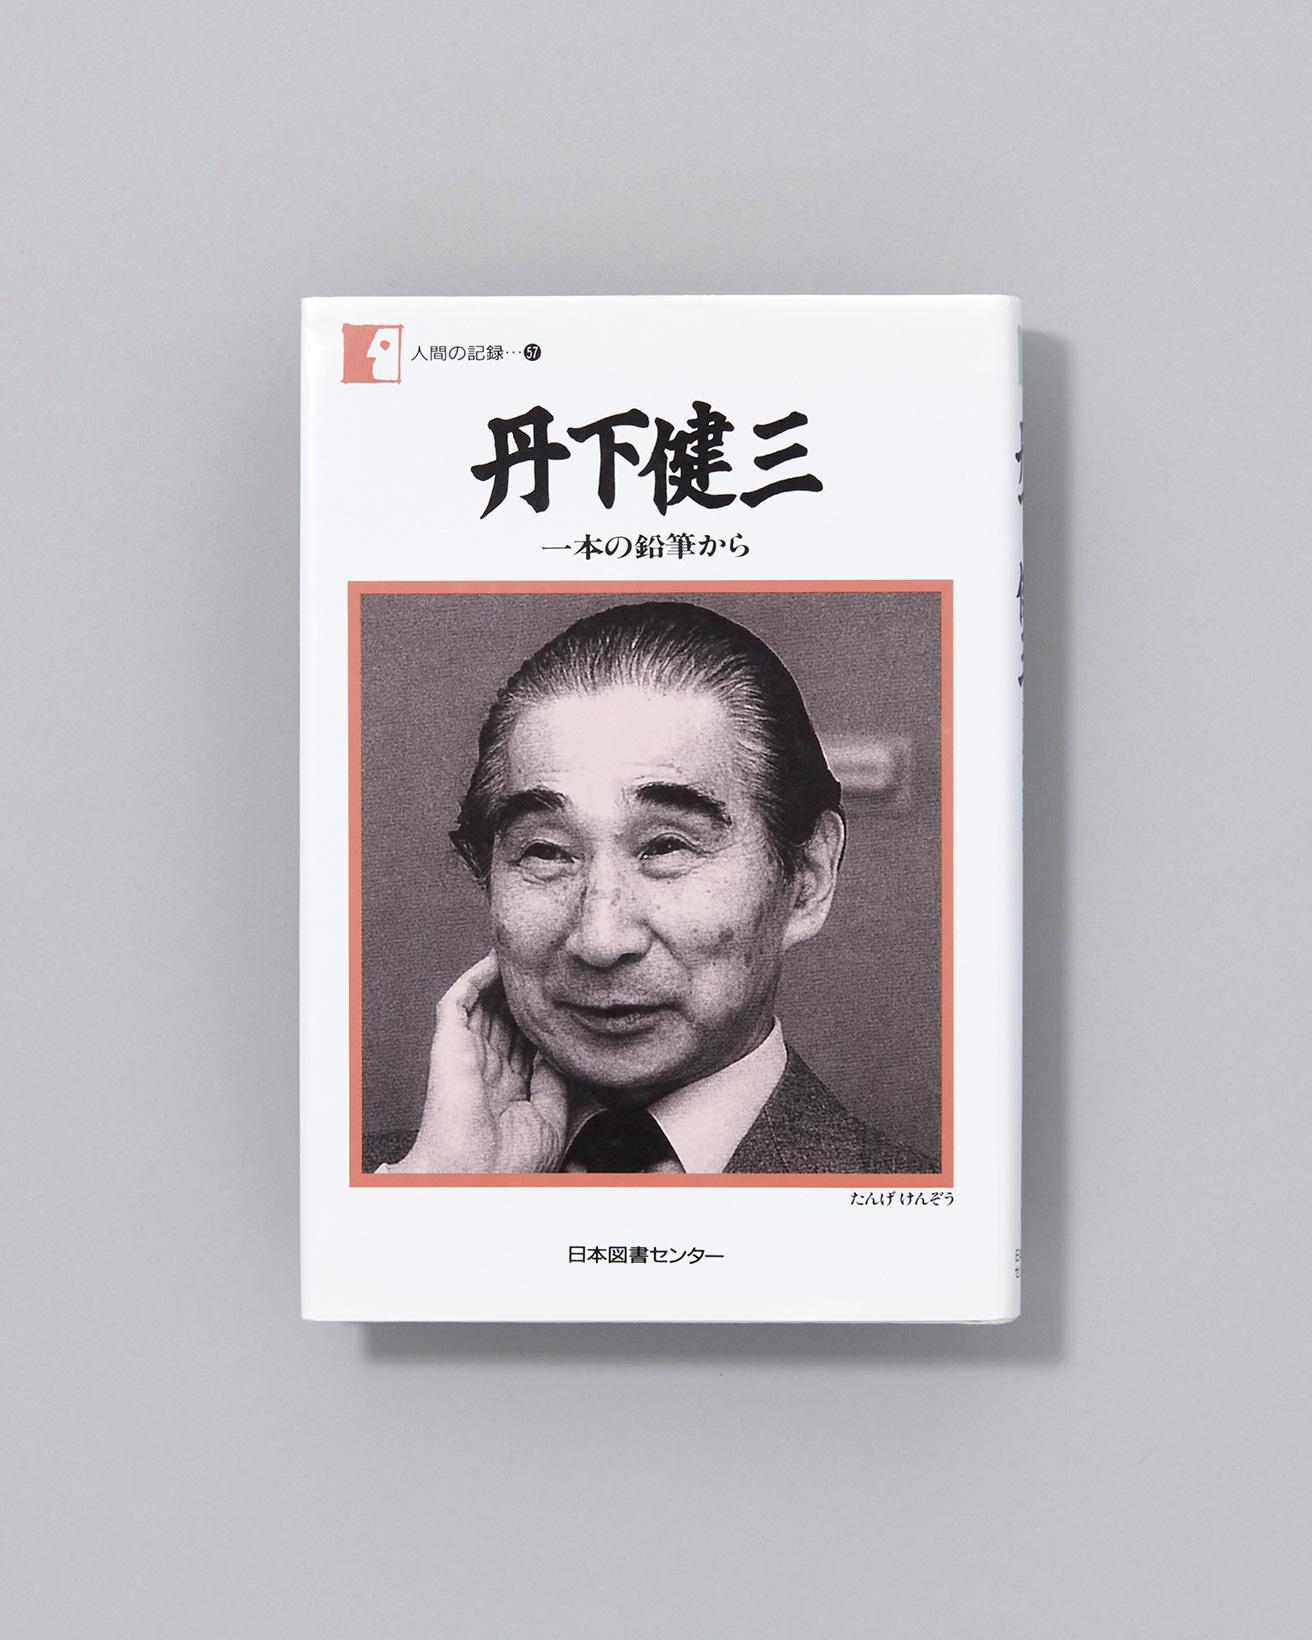 1983年に日本経済新聞の連載「私の履歴書」で掲載された内容をまとめた書籍『一本の鉛筆から』の再刊行本。丹下の誕生から数々の名建築、海外での都市計画などにまつわるエピソードを収録。『一本の鉛筆から（人間の記録）』日本図書センター 1997年初版発行